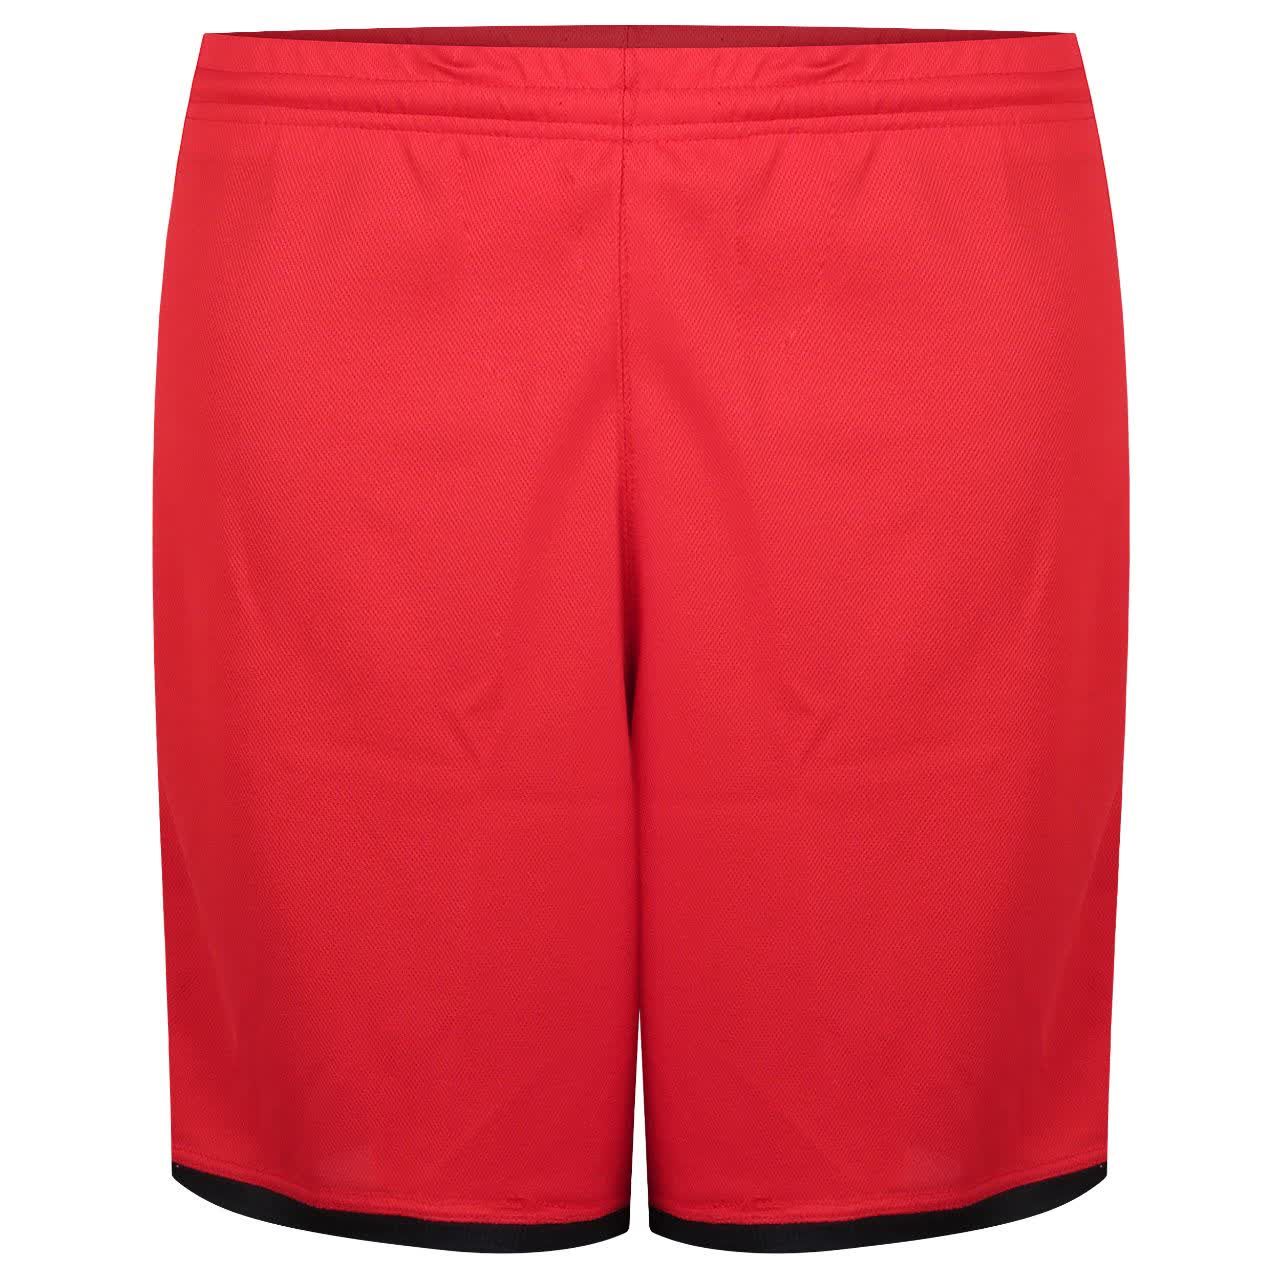 ست تی شرت و شلوارک ورزشی مردانه کالای ورزشی پروین مدل a.s.i.x.6 رنگ قرمز -  - 3